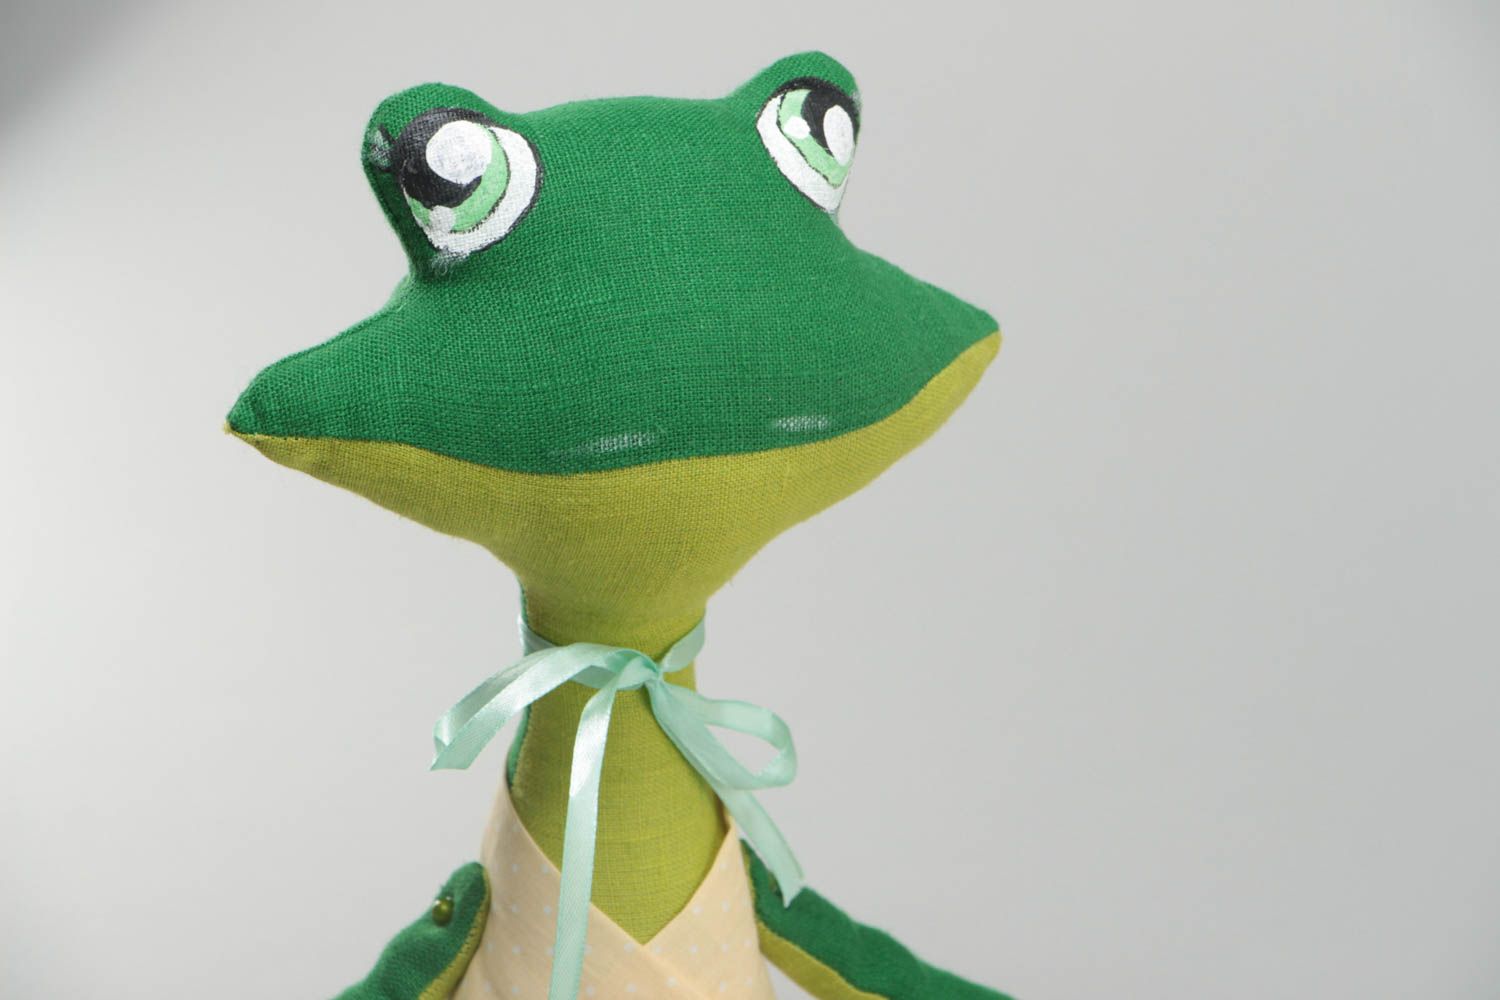 Jouet décoratif en tissu fait main design original peint pour enfant grenouille photo 3